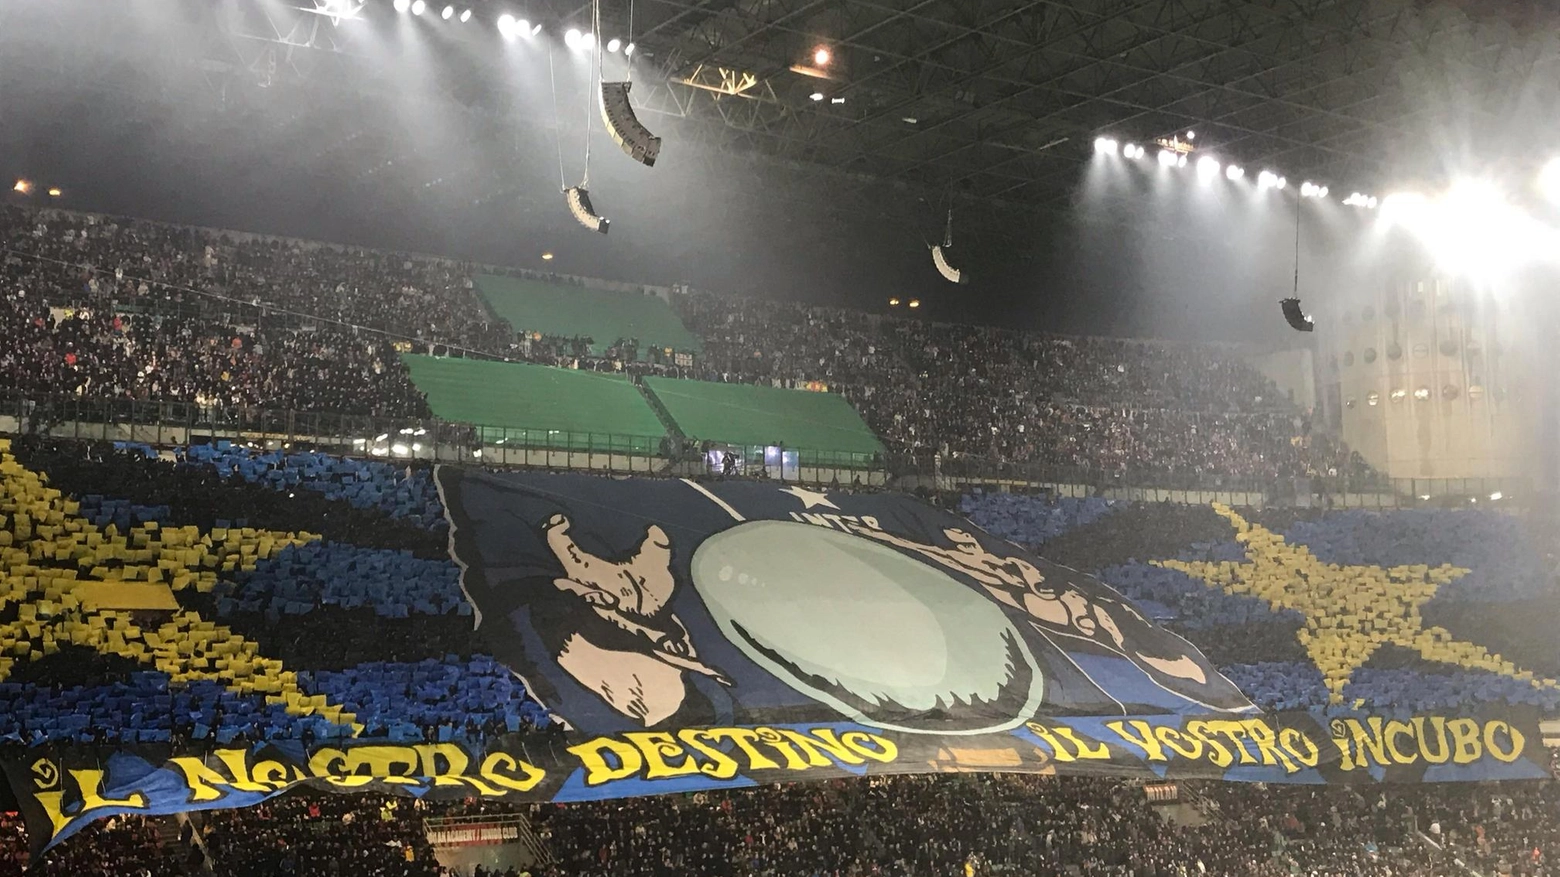 L'Inter festeggia il ventesimo scudetto dopo la vittoria nel derby contro il Milan. I tifosi si preparano per i festeggiamenti, mentre sul fronte rossonero si parla dell'addio imminente di Stefano Pioli.